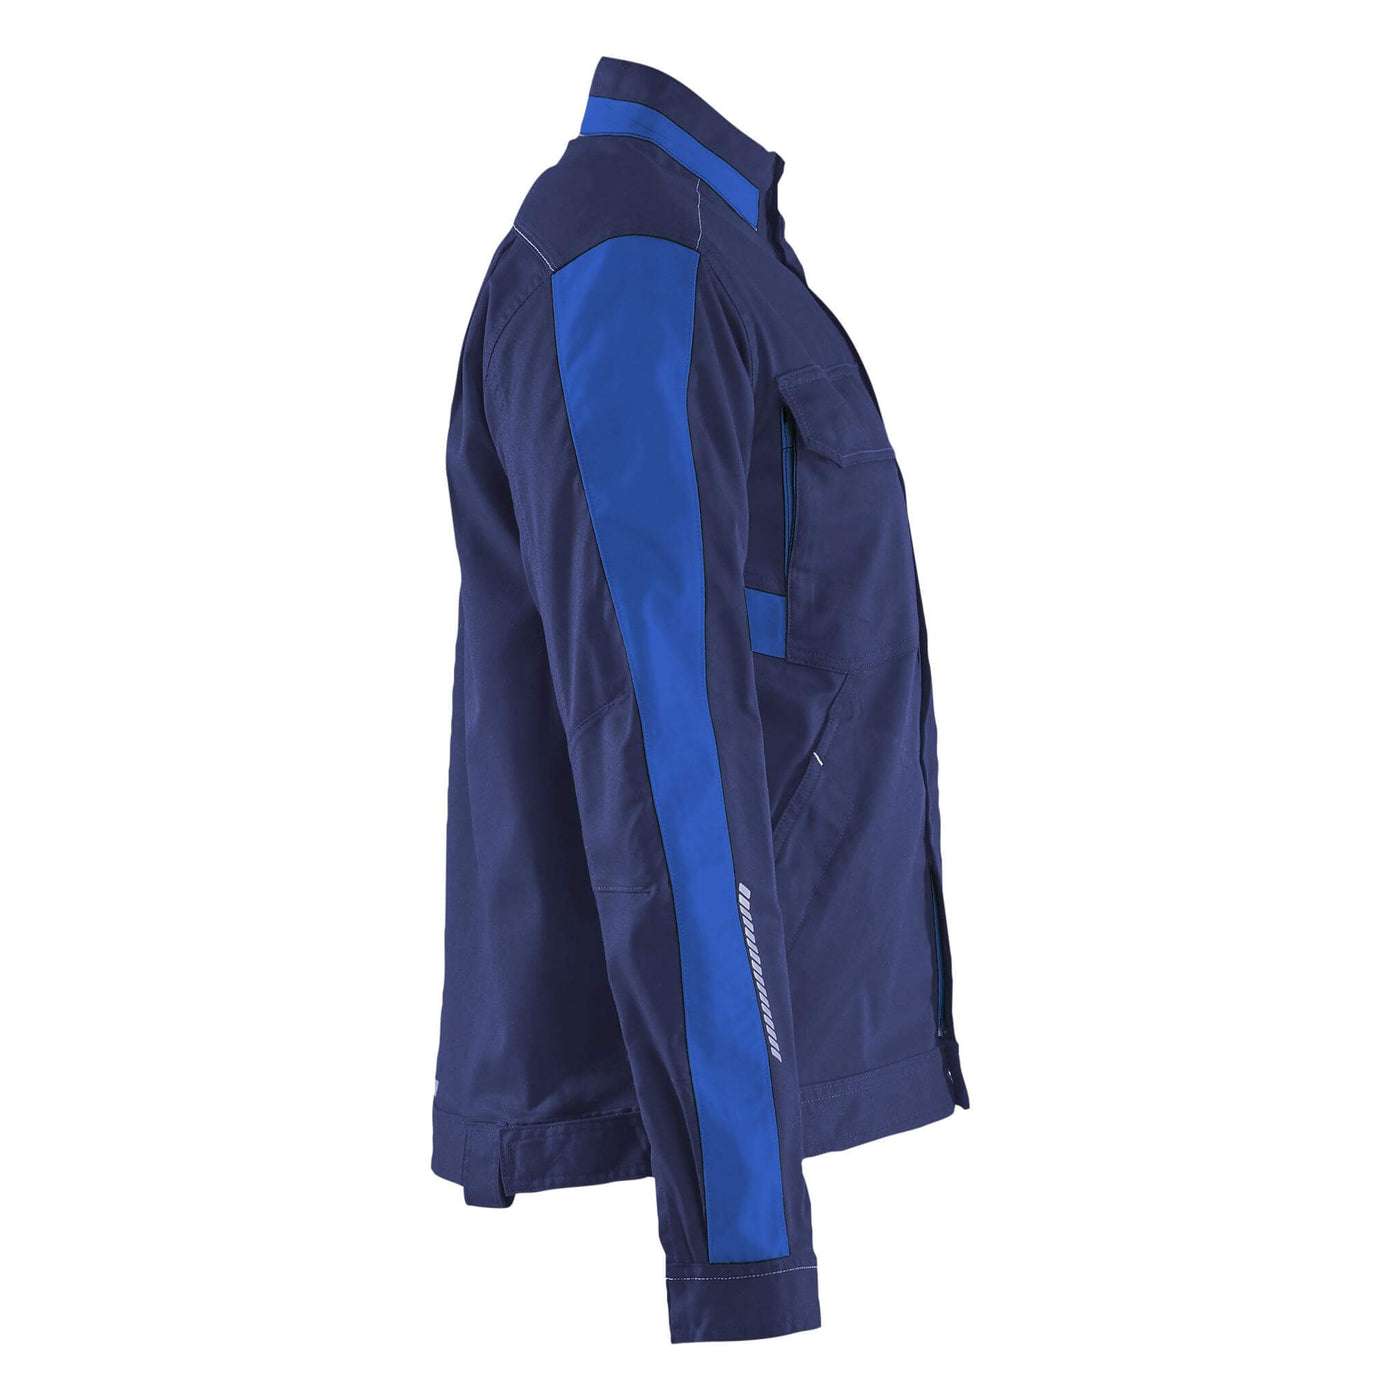 Blaklader 44431832 Womens Stretch Industry Jacket Navy Blue/Cornflower Blue Right #colour_navy-blue-cornflower-blue